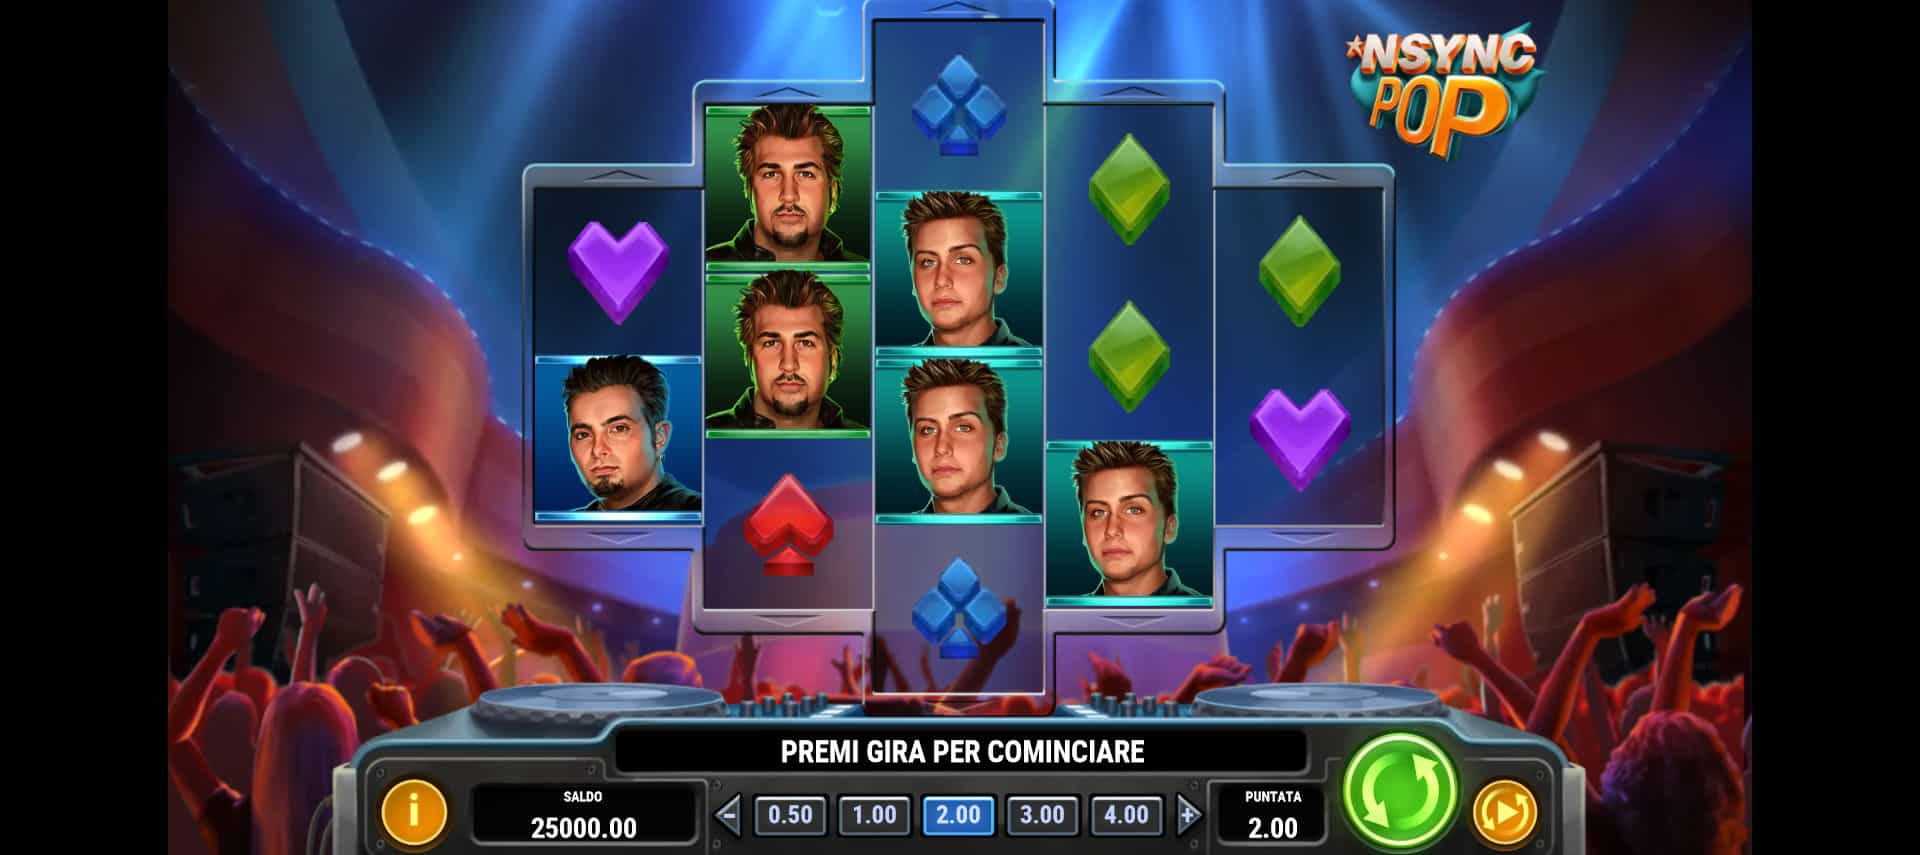 schermata del gioco slot machine nsync pop